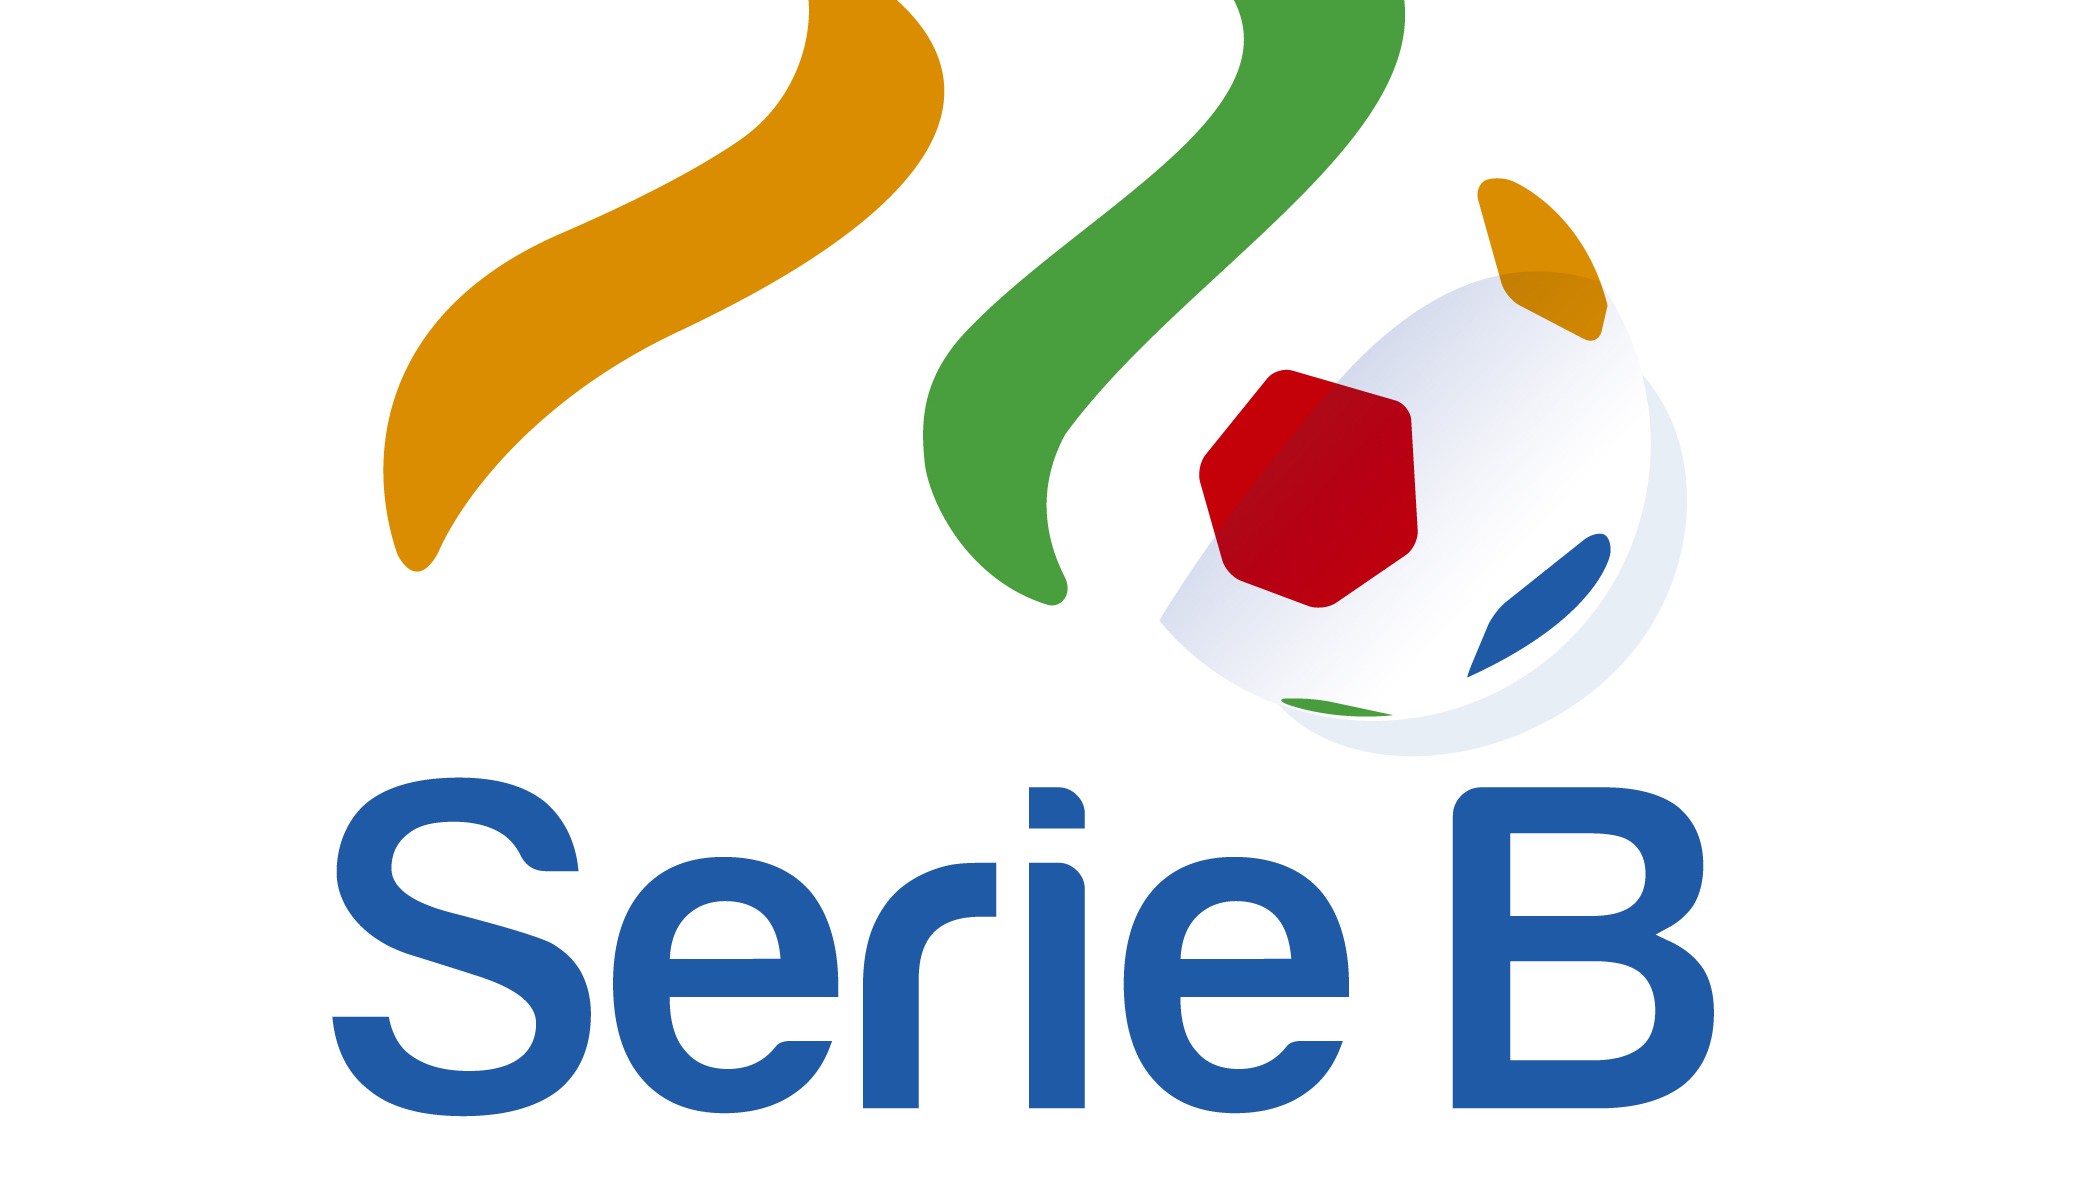 Venezia – Benevento (Pick, Prediction, Preview) Preview